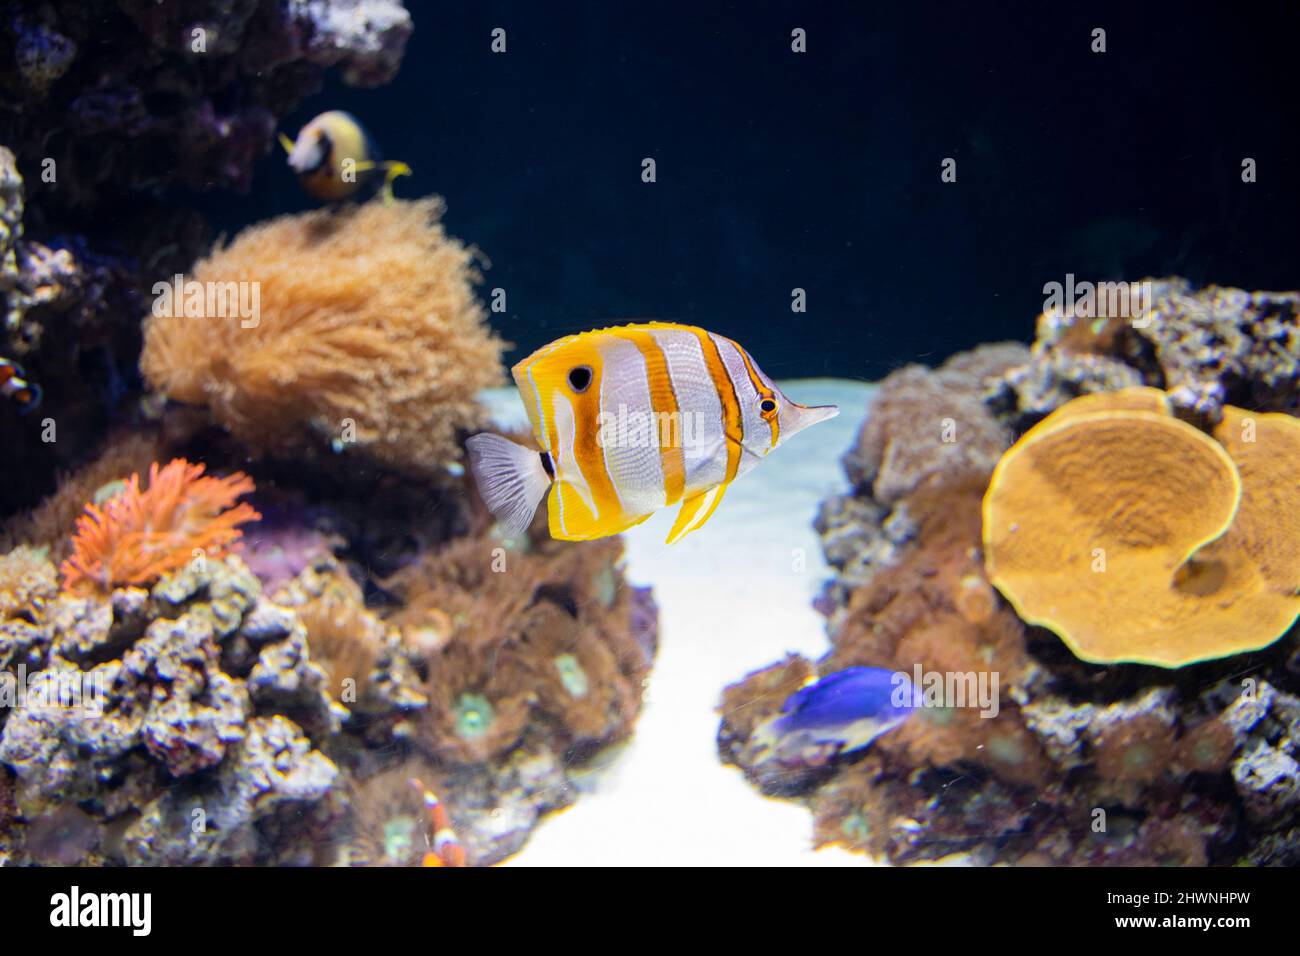 El butterflyfish del coperband, también conocido como el pez coralino beaked. Foto de stock